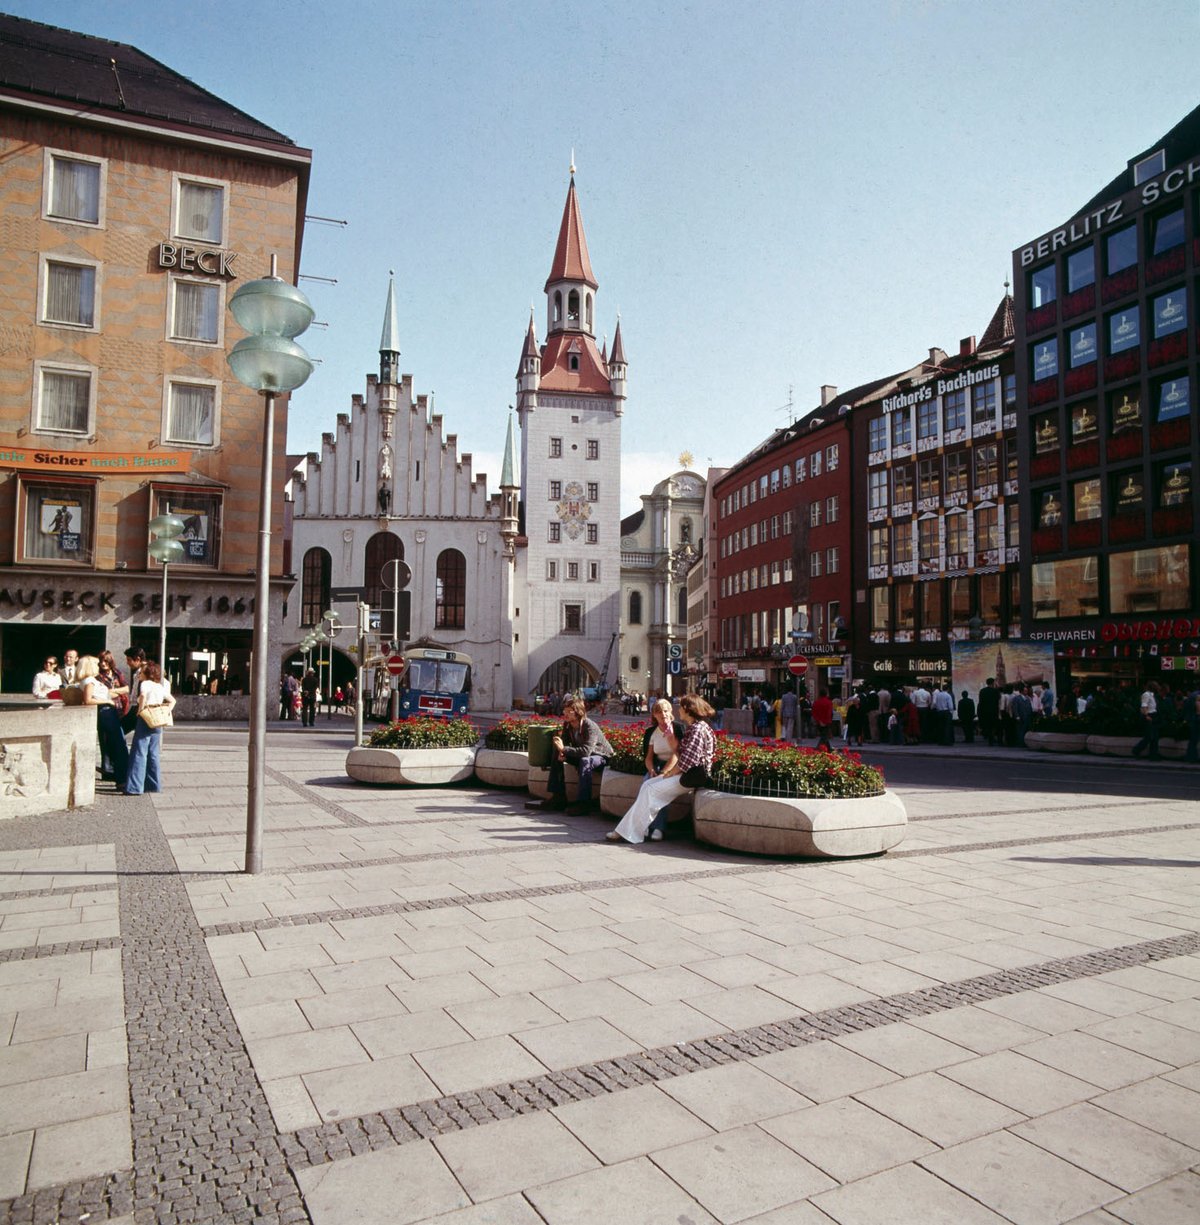 Fotografie von der Innenstadt Münchens